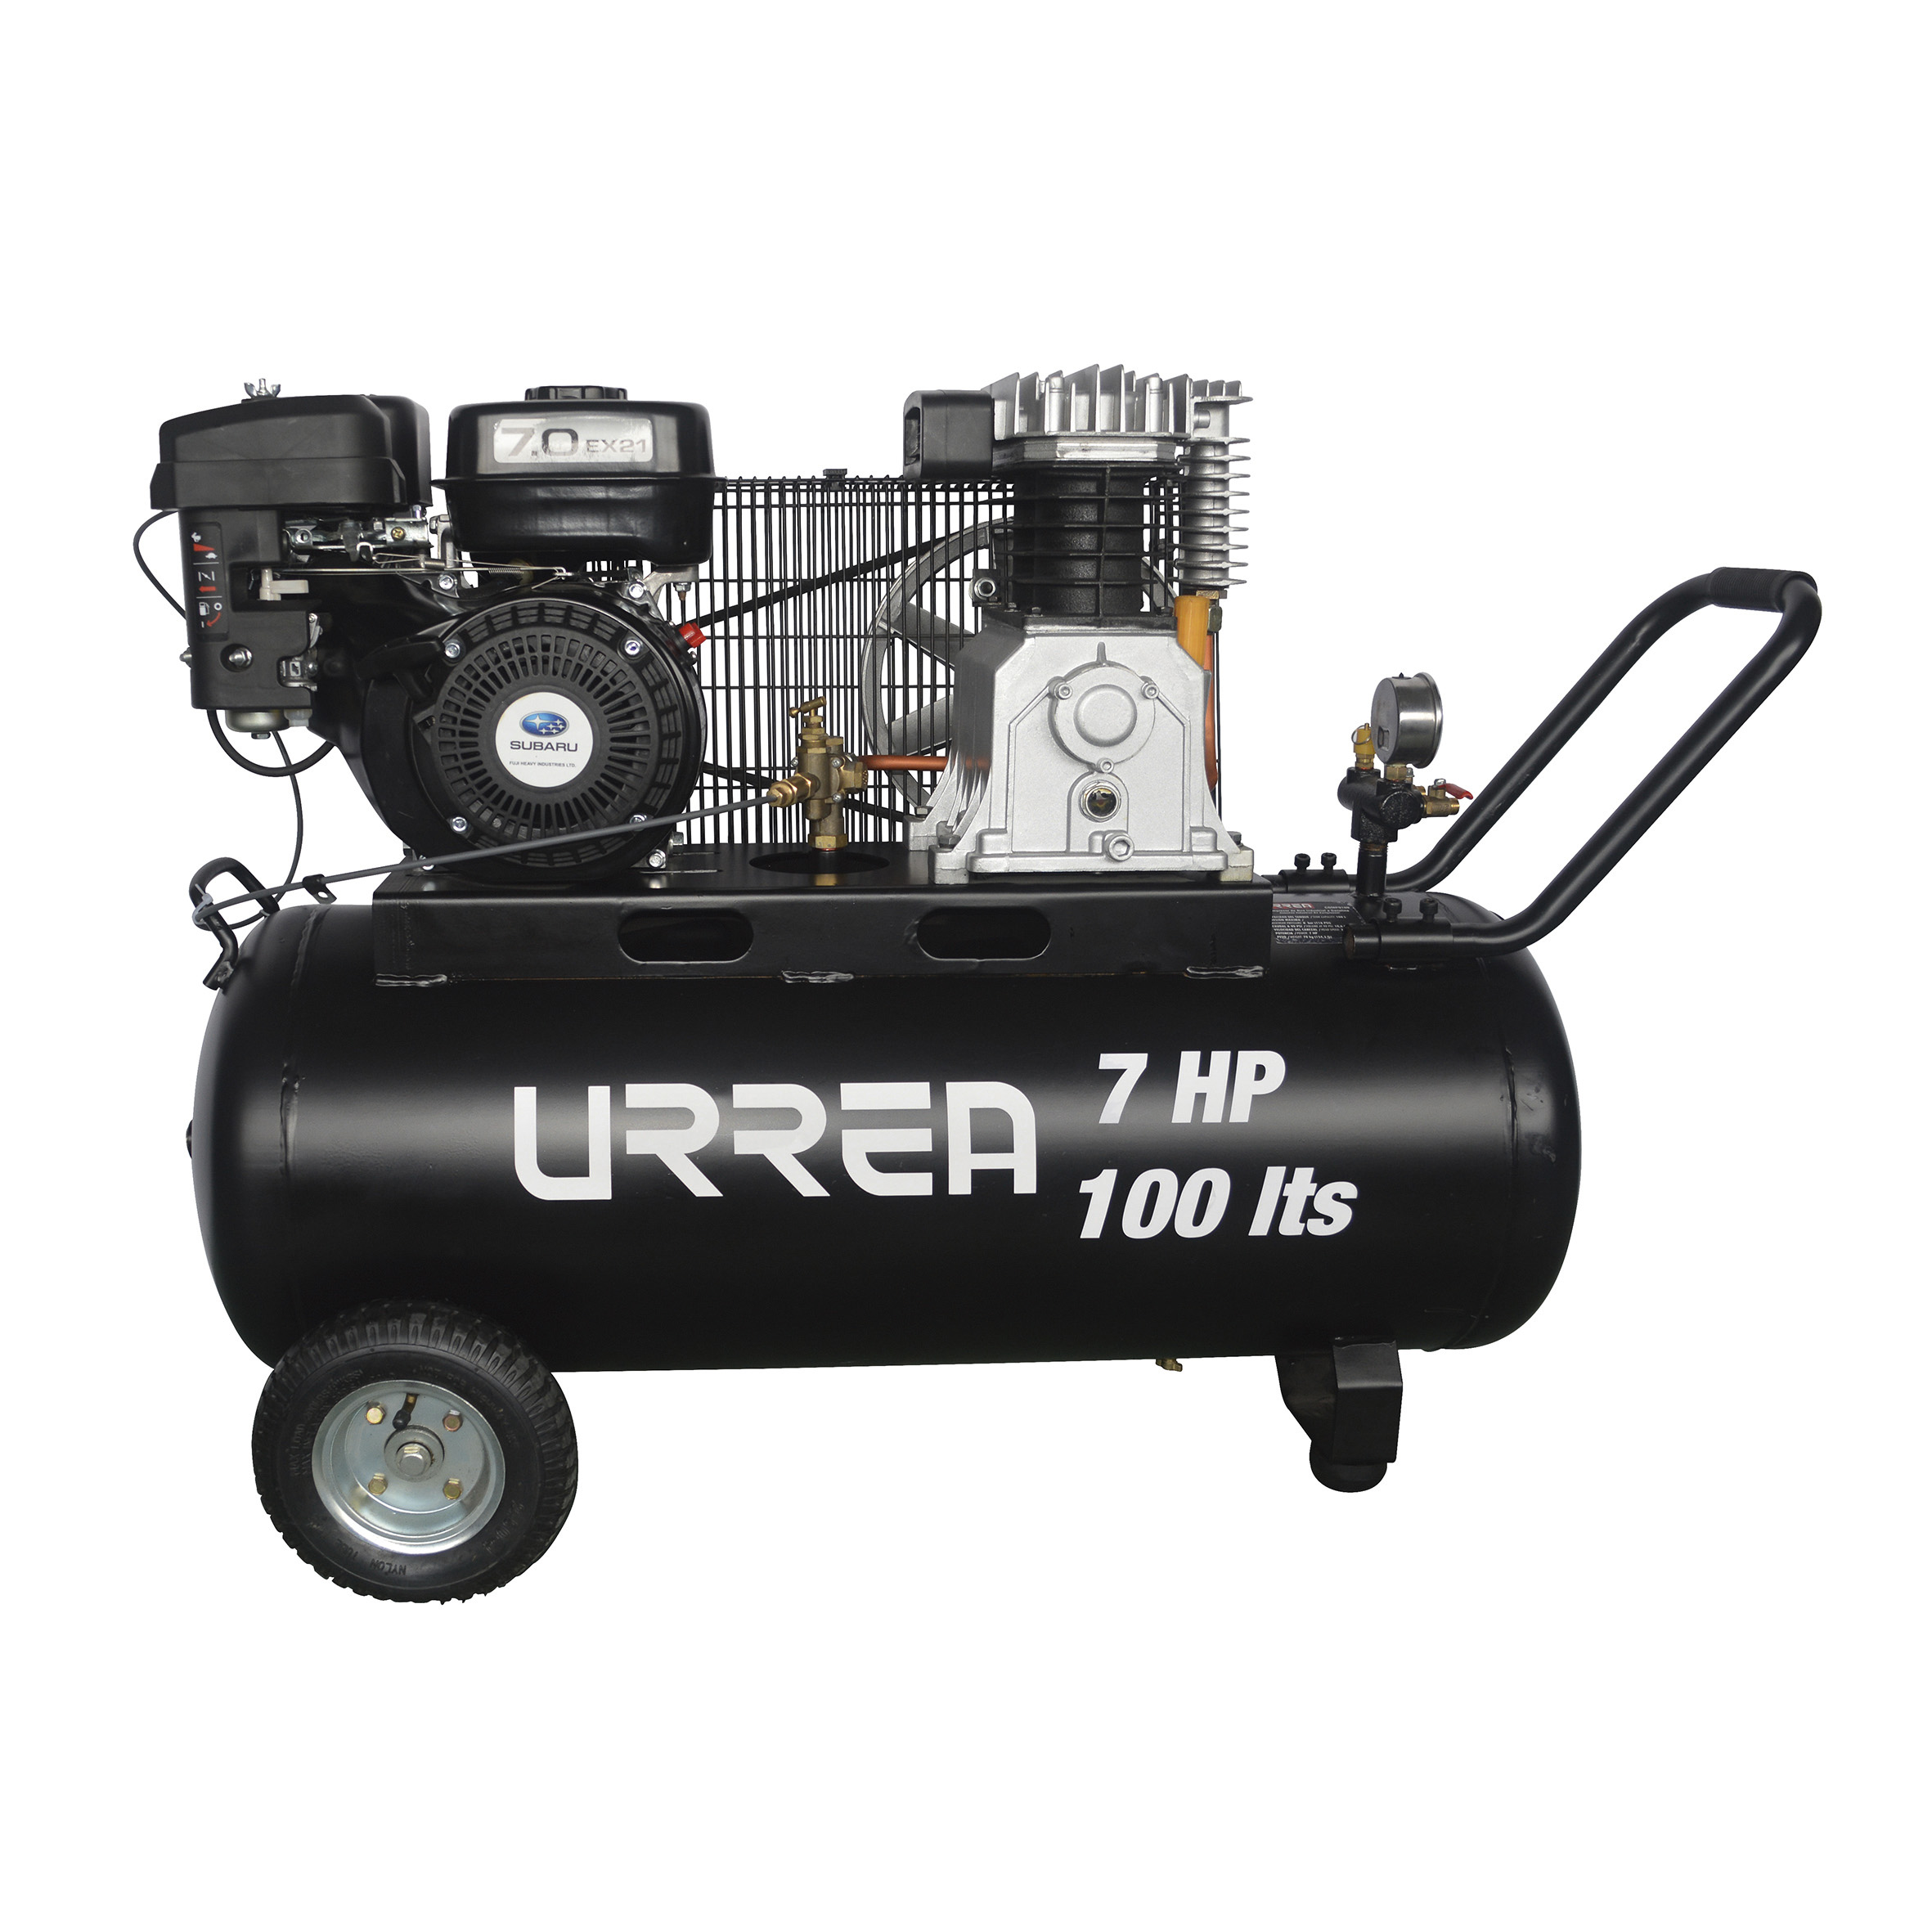 Imagen para Compresor de aire a gasolina 100Lt 7HP de Grupo Urrea